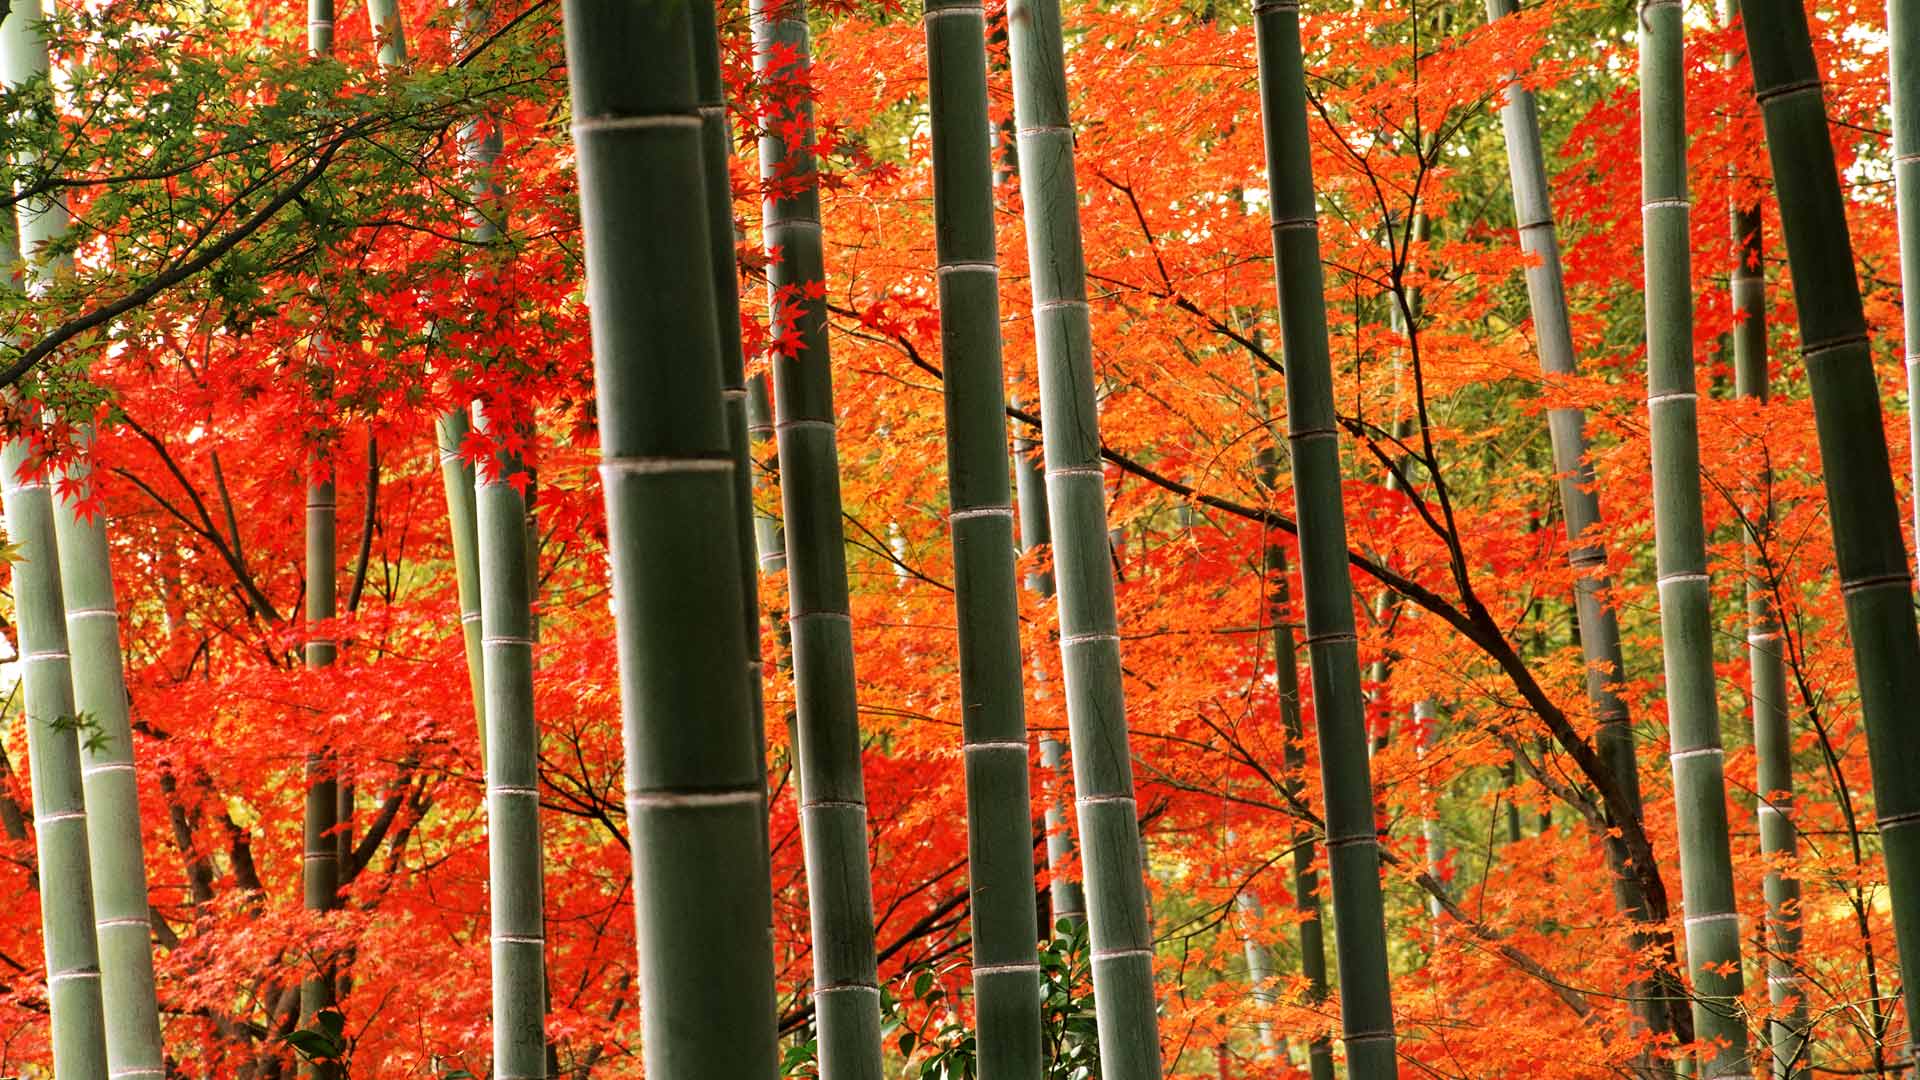 嵐山公園の竹林と紅葉 京都 嵐山 Bing Gallery